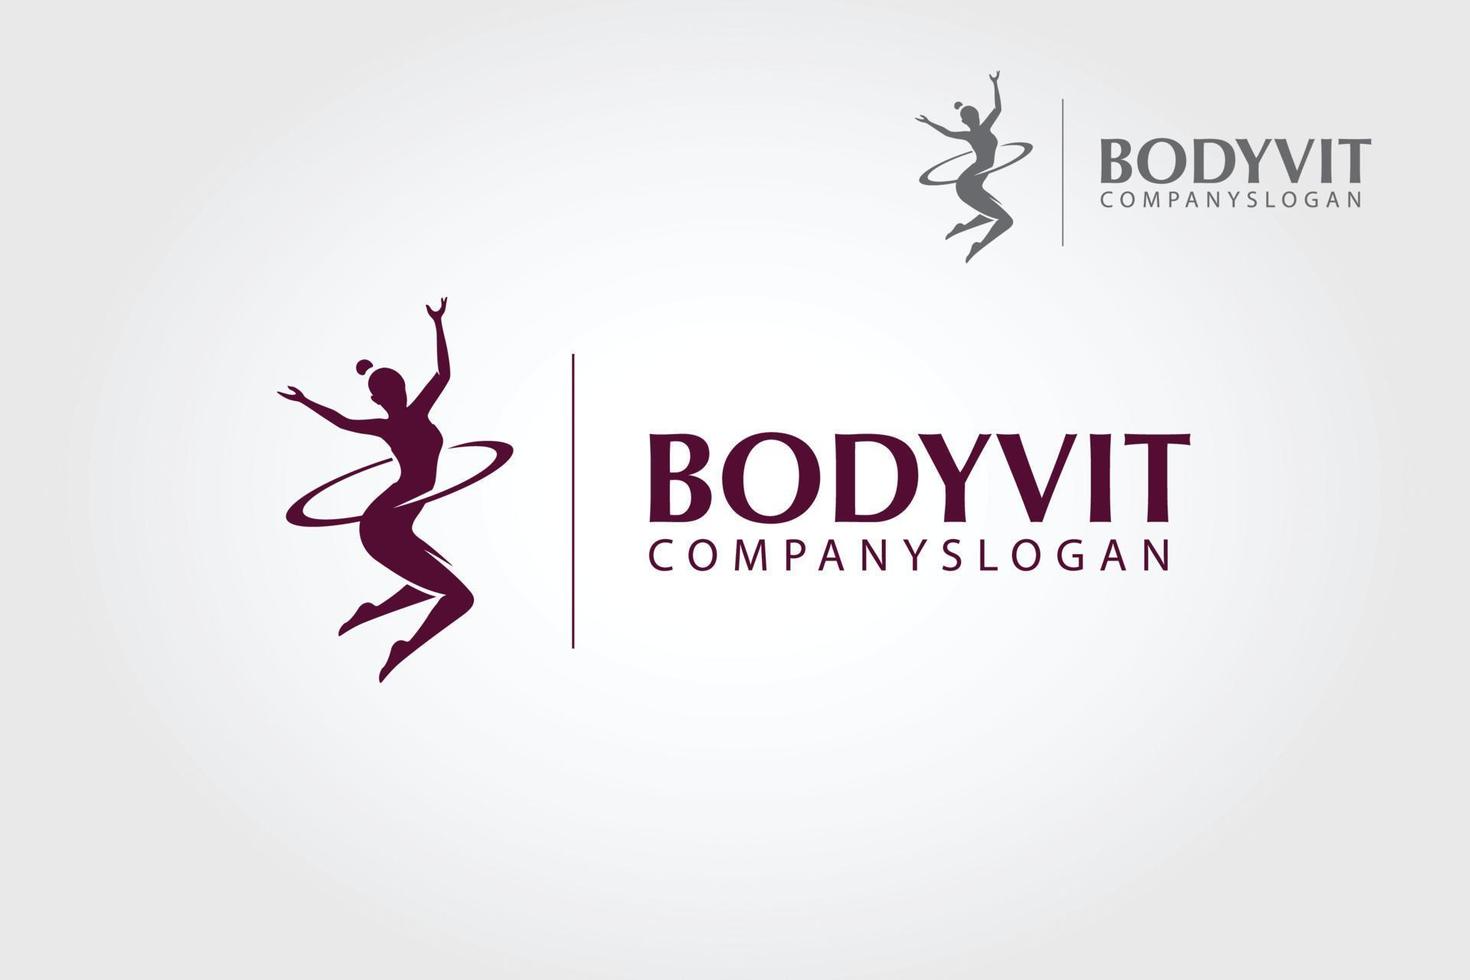 le modèle de logo vectoriel body vit. belle silhouette vectorielle utilisée pour l'entreprise, qui fait du coaching nutritionnel et de style de vie comme une approche alimentaire globale pour améliorer la santé et la composition corporelle.